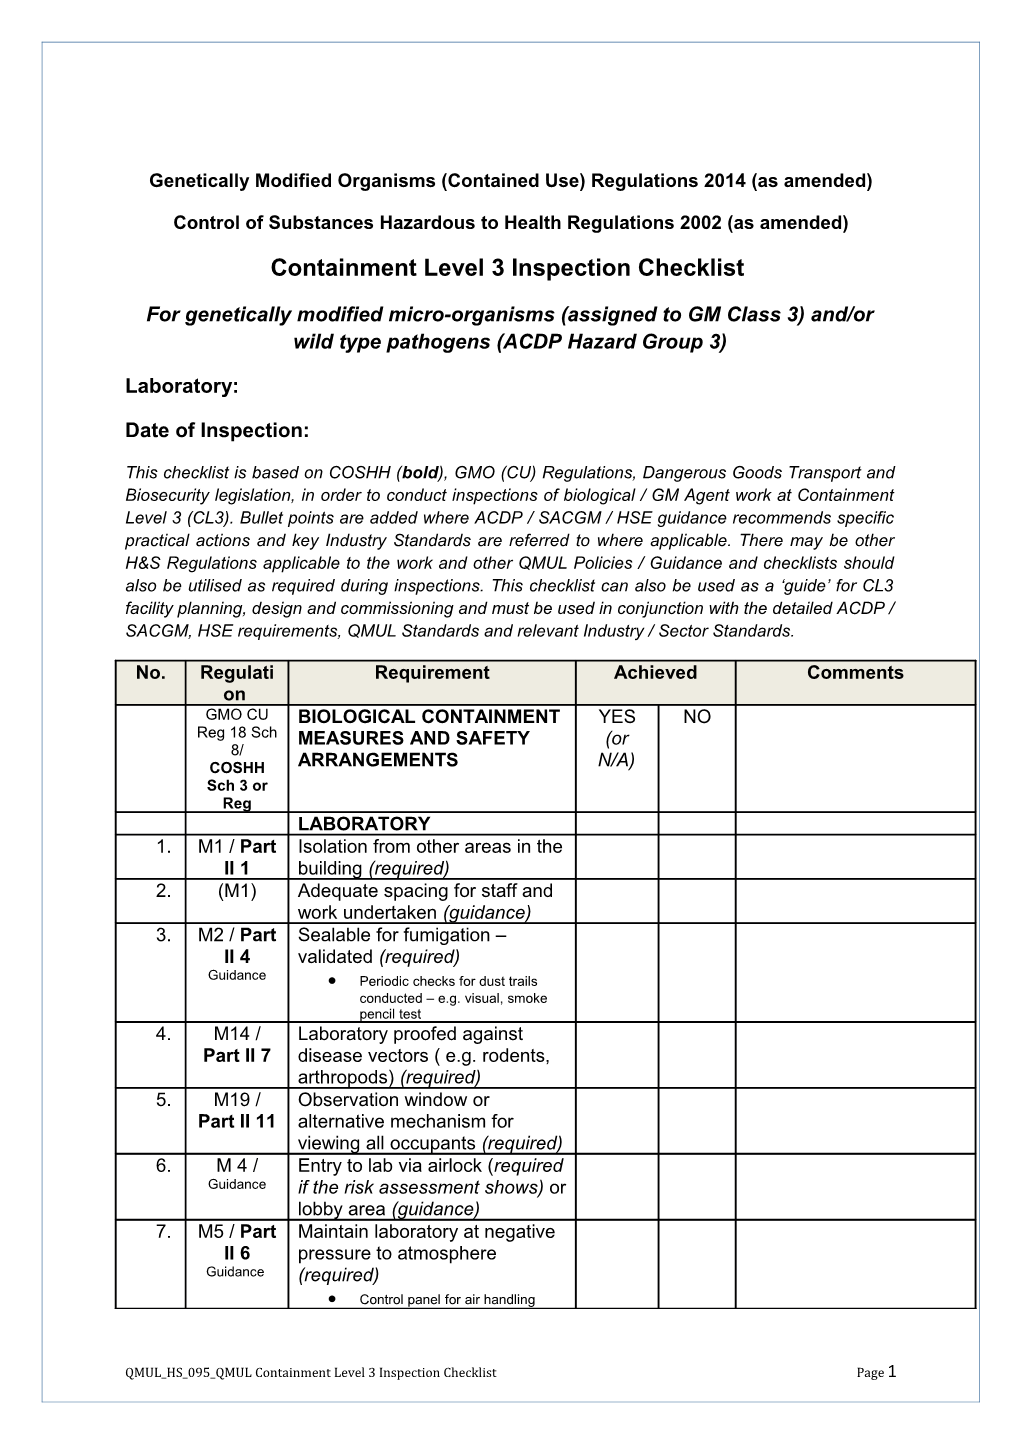 QMUL HS 095 April 2016 Containment Level 3 Inspection Checklist